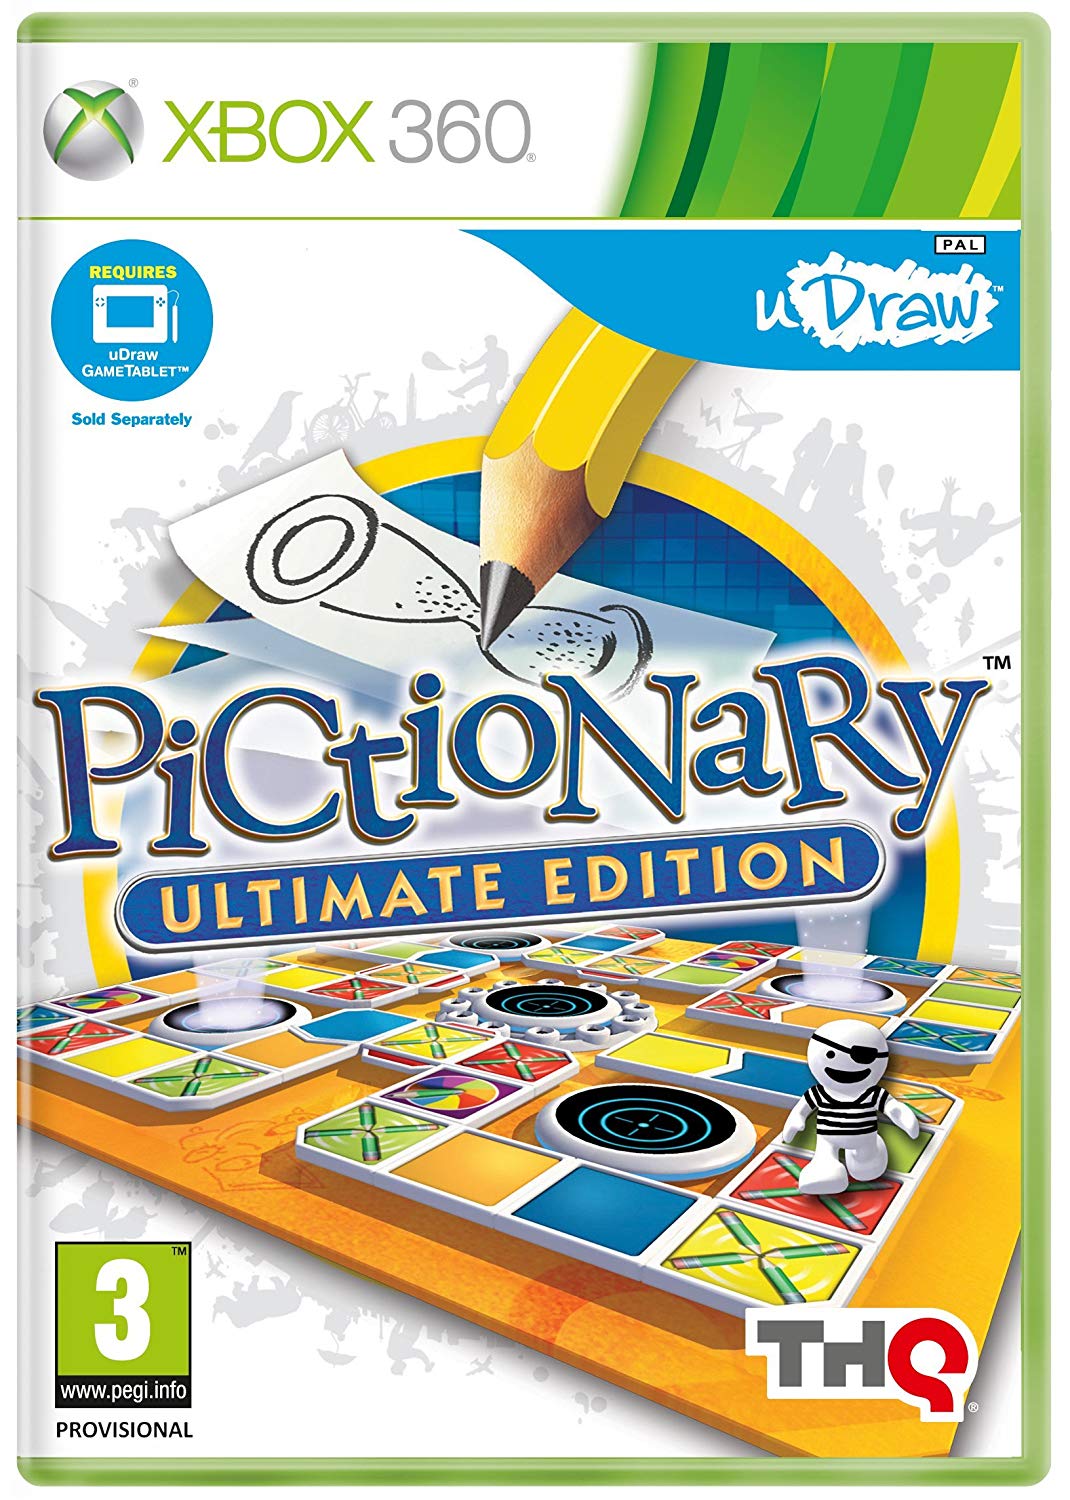 uDraw Pictionary Ultimate Edition (játékszoftver) - Xbox 360 Játékok